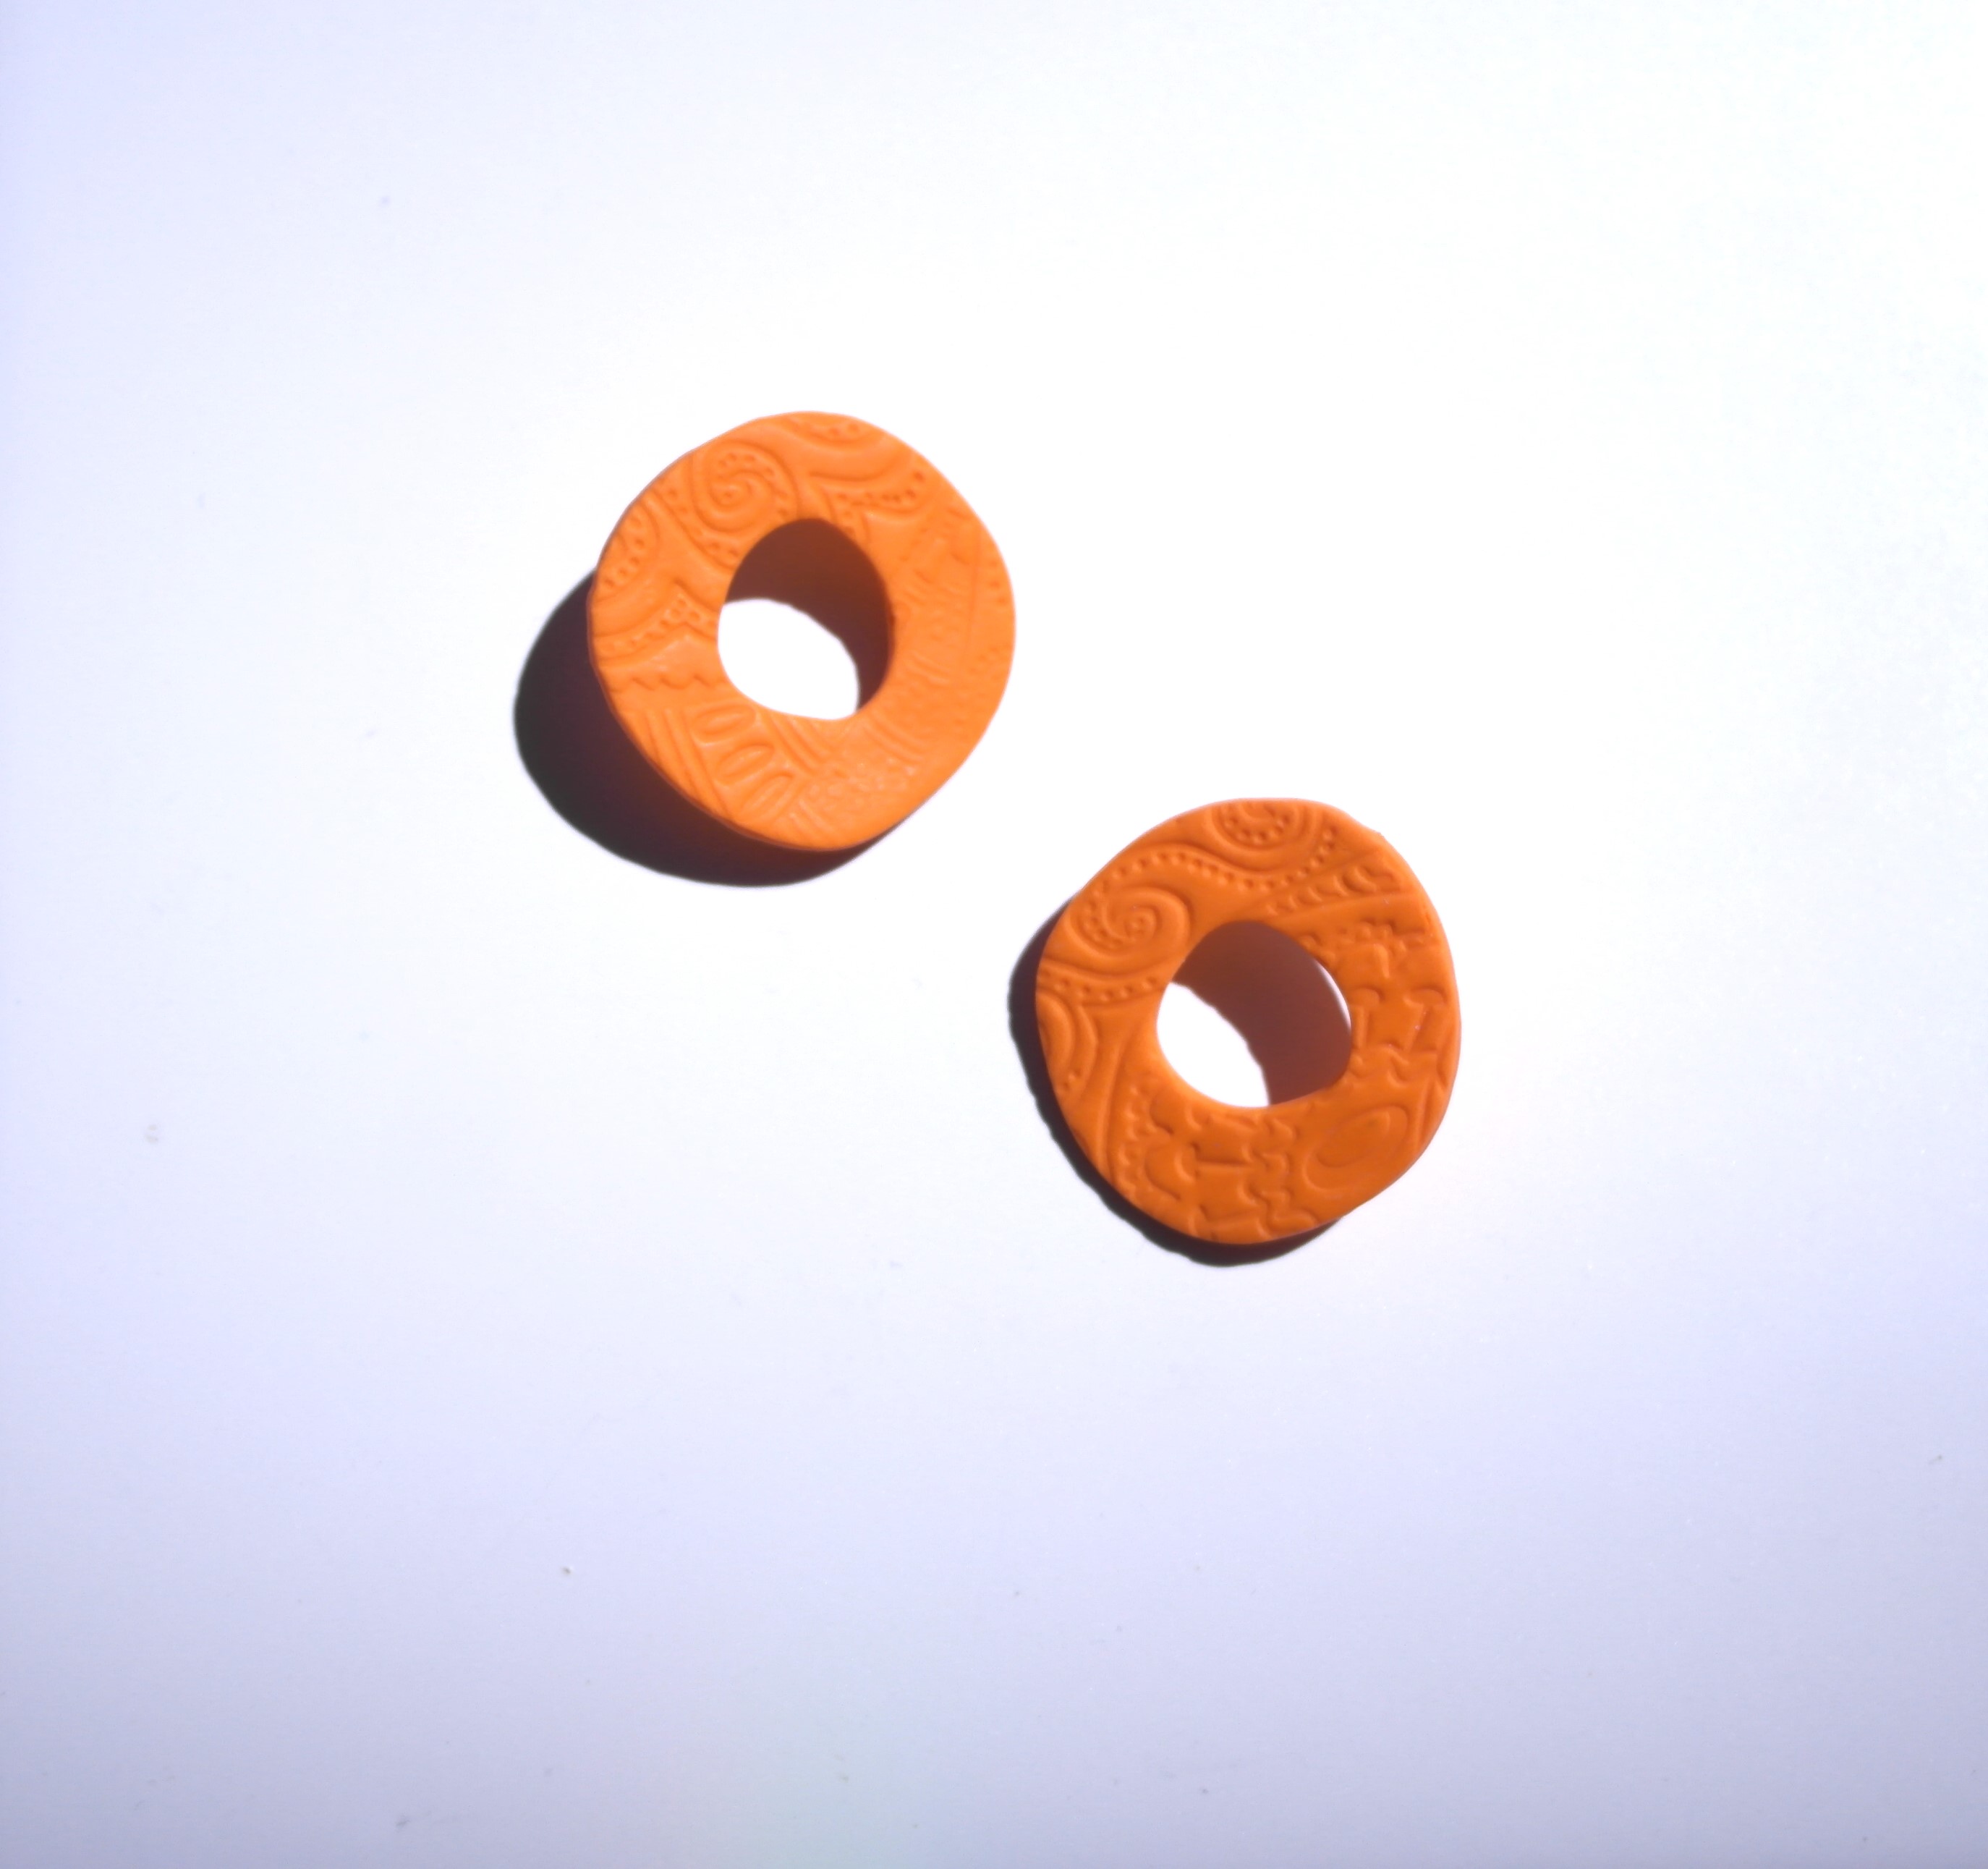 Happy Clay Earrings Orange Cycle